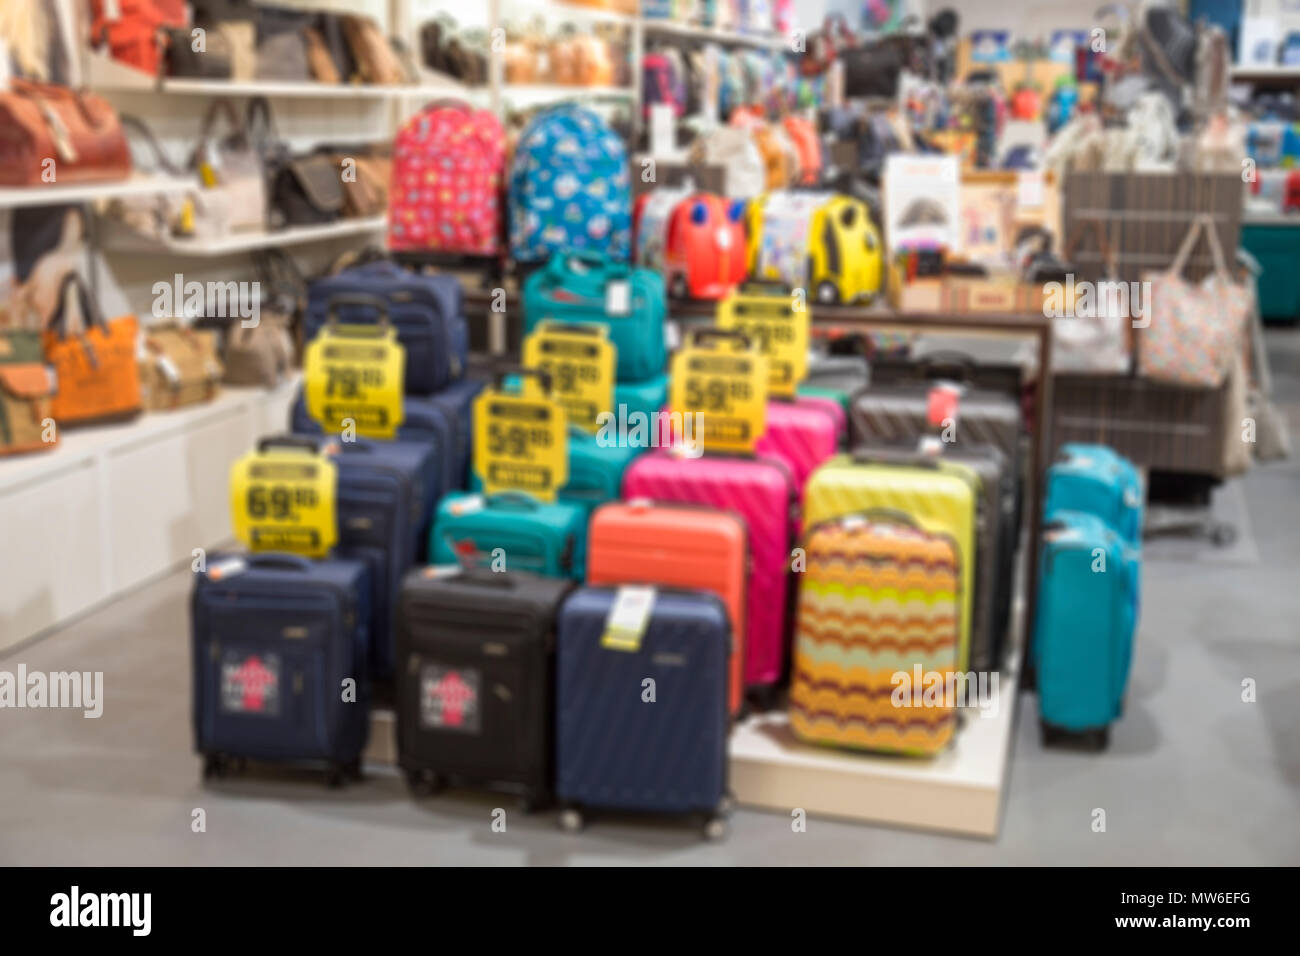 Suitcase Goyard - The Flea Market of Paris Saint-Ouen